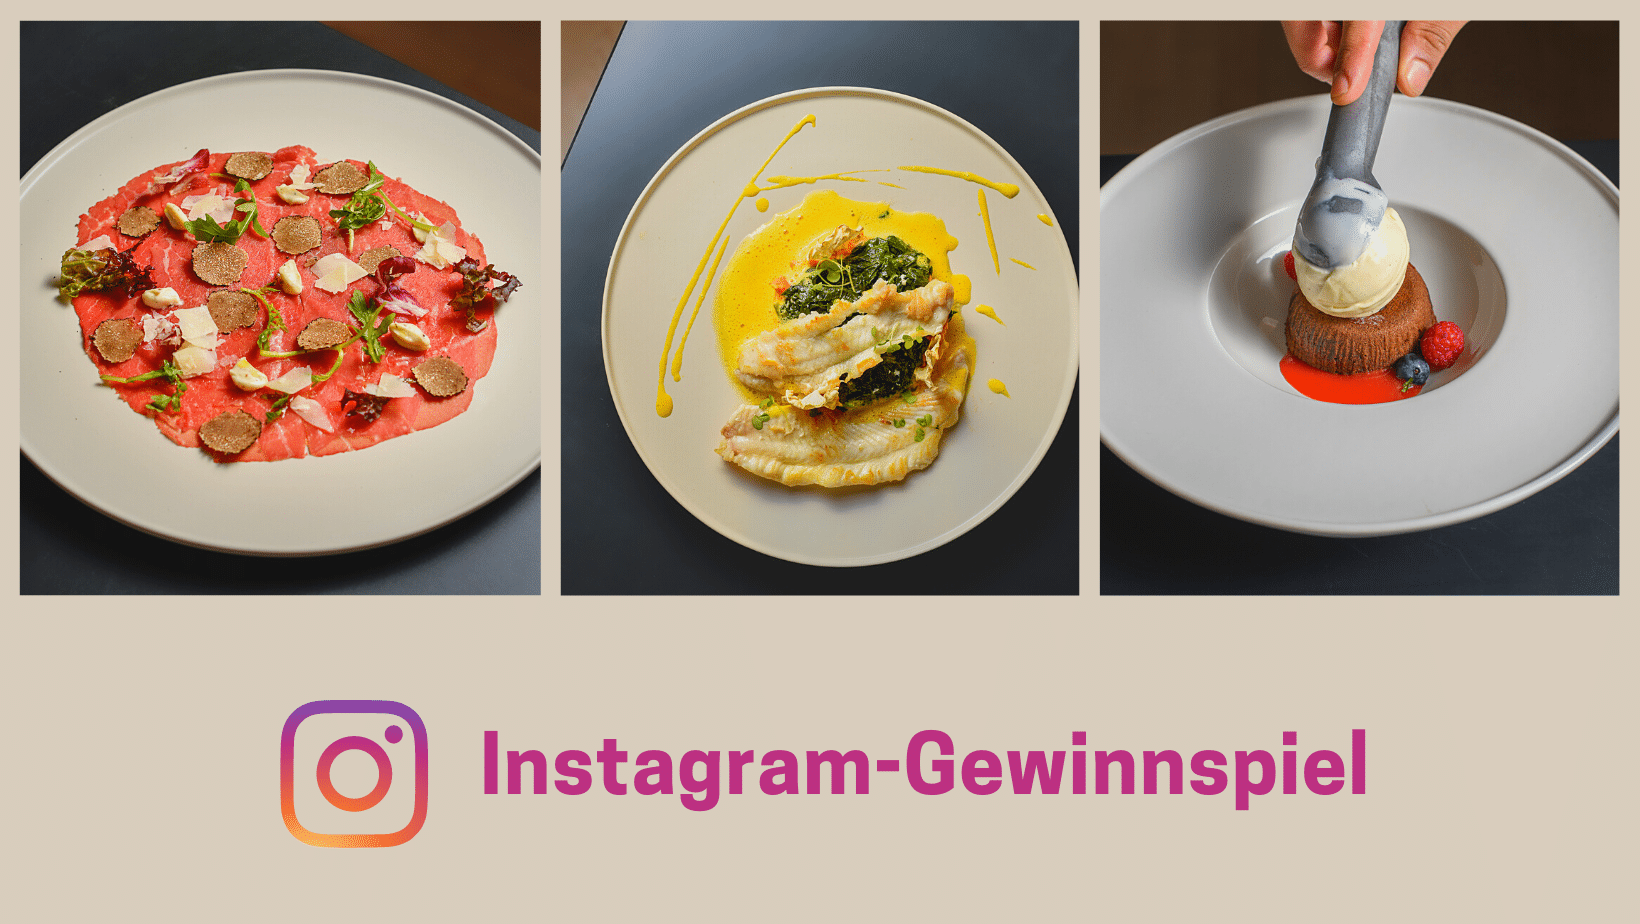 Instagram-Gewinnspiel Restaurantgutschein gewinnen